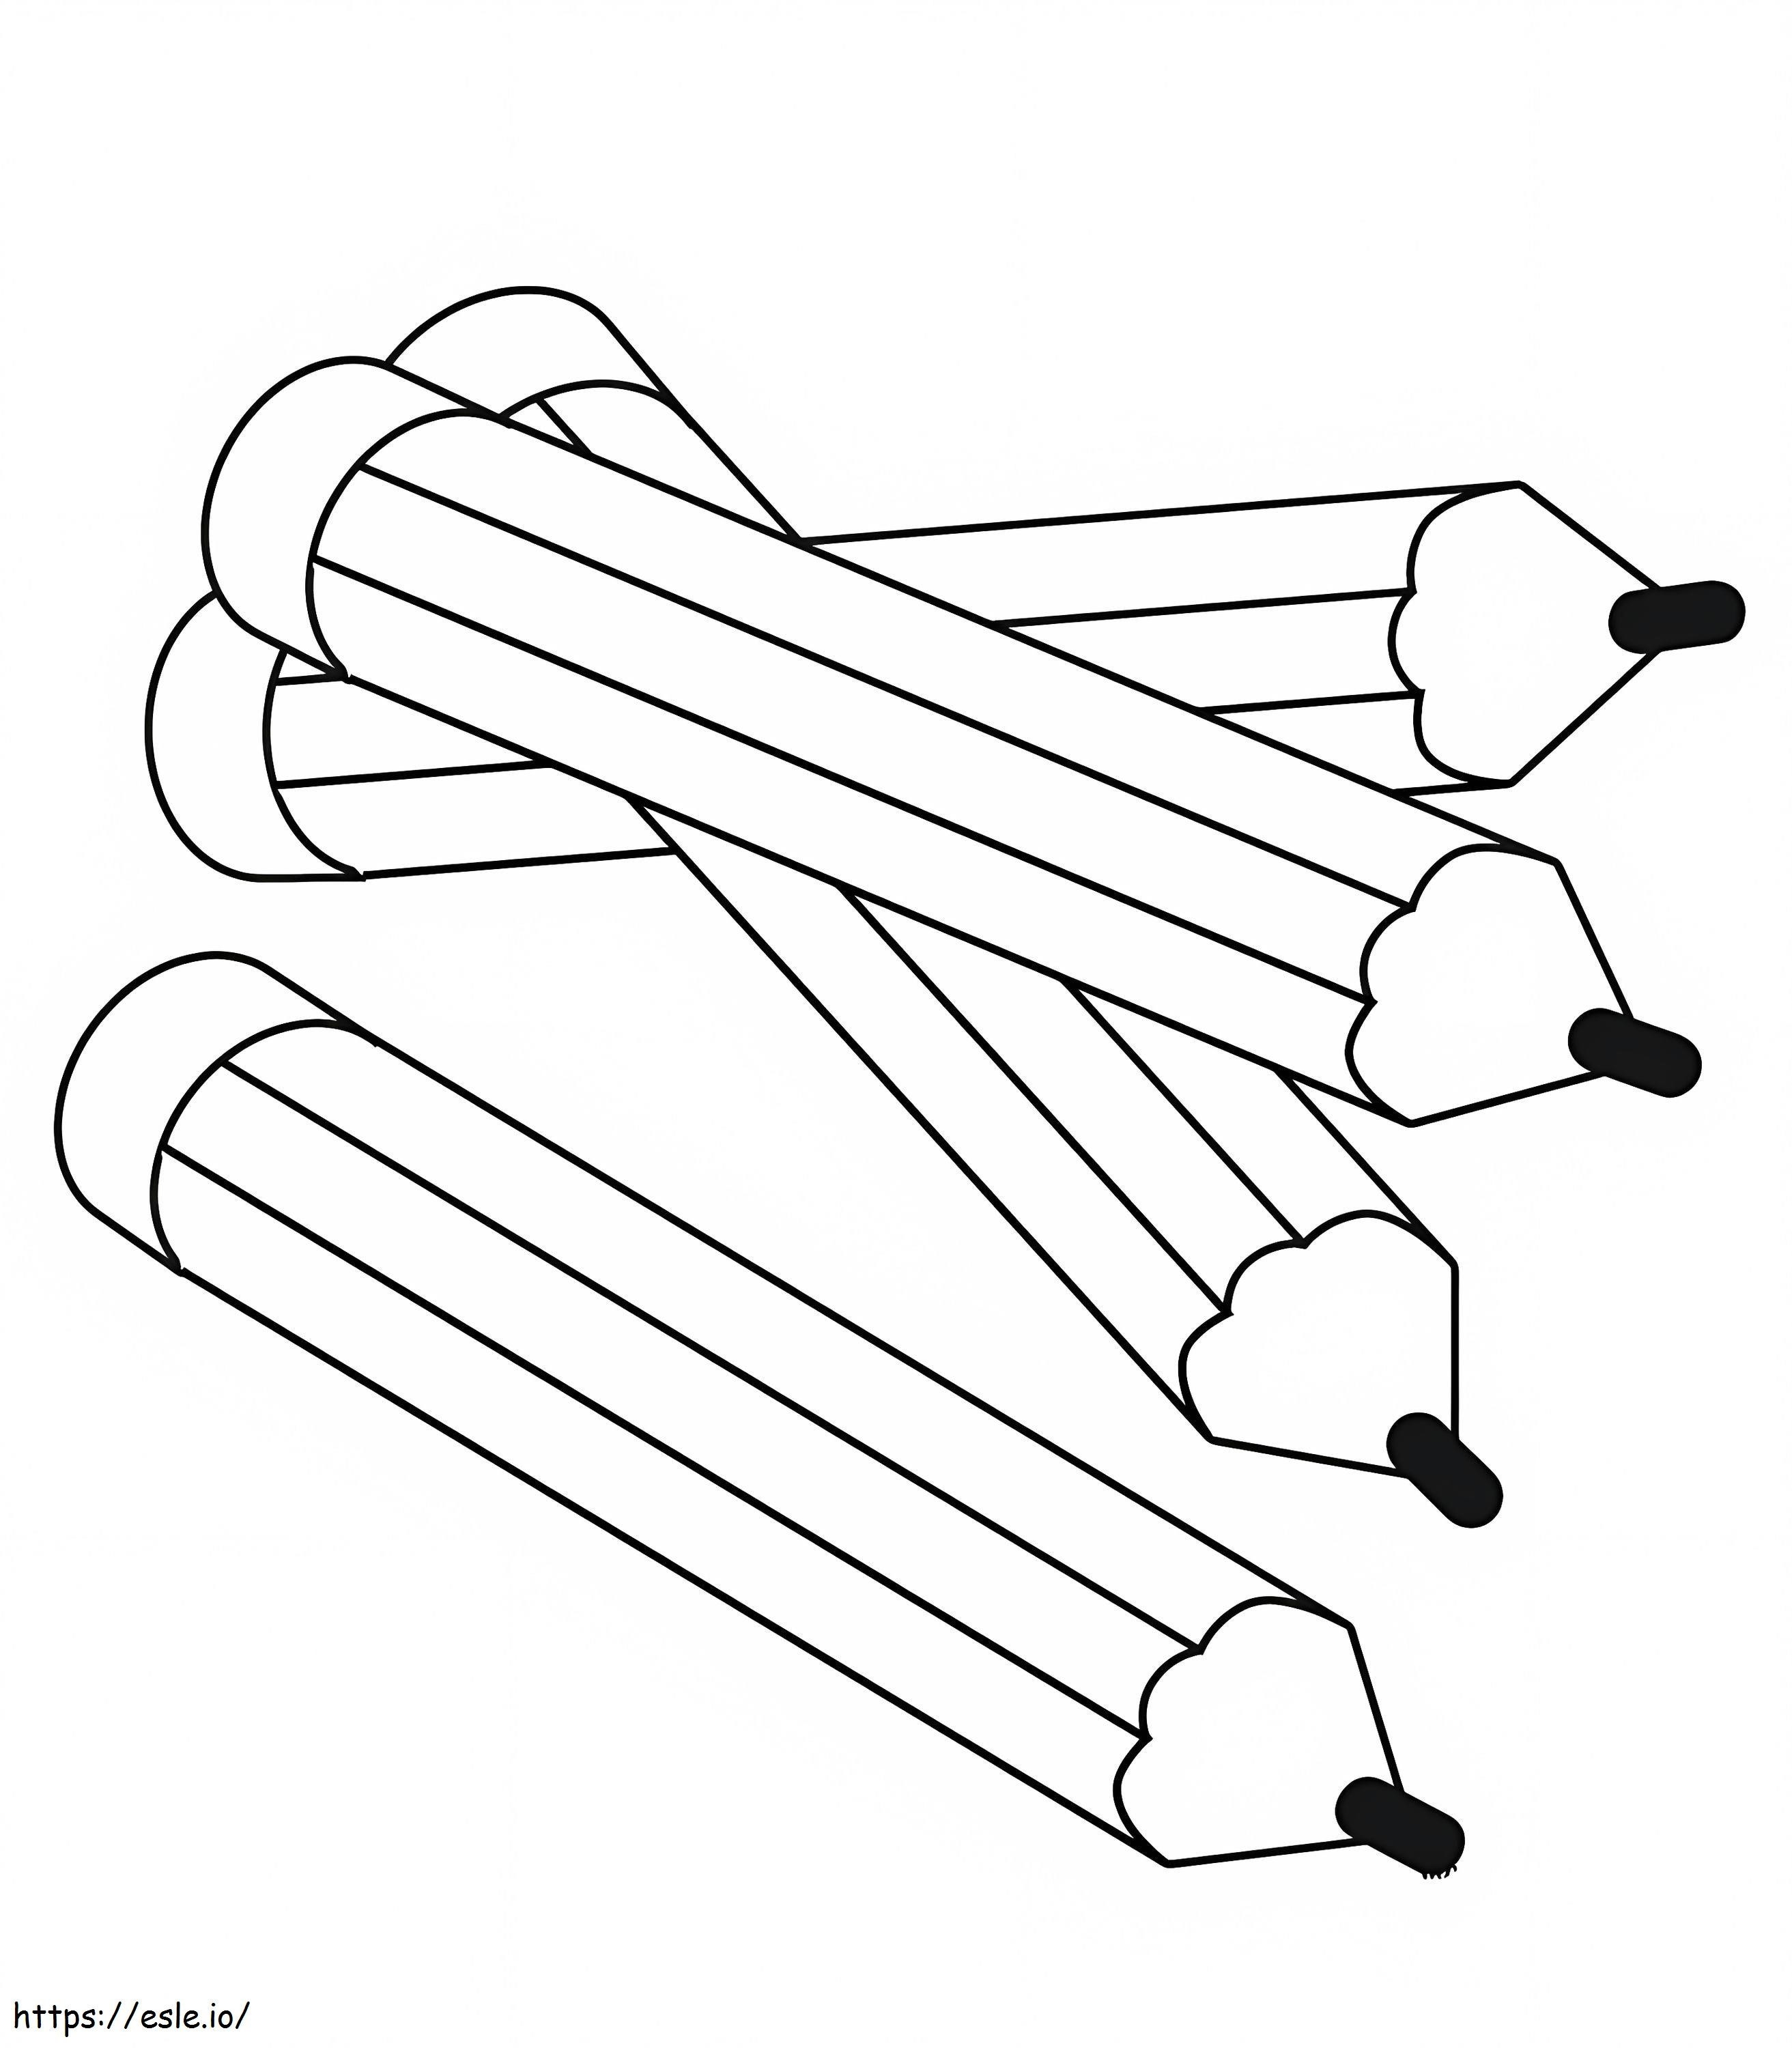 4 Bleistifte ausmalbilder